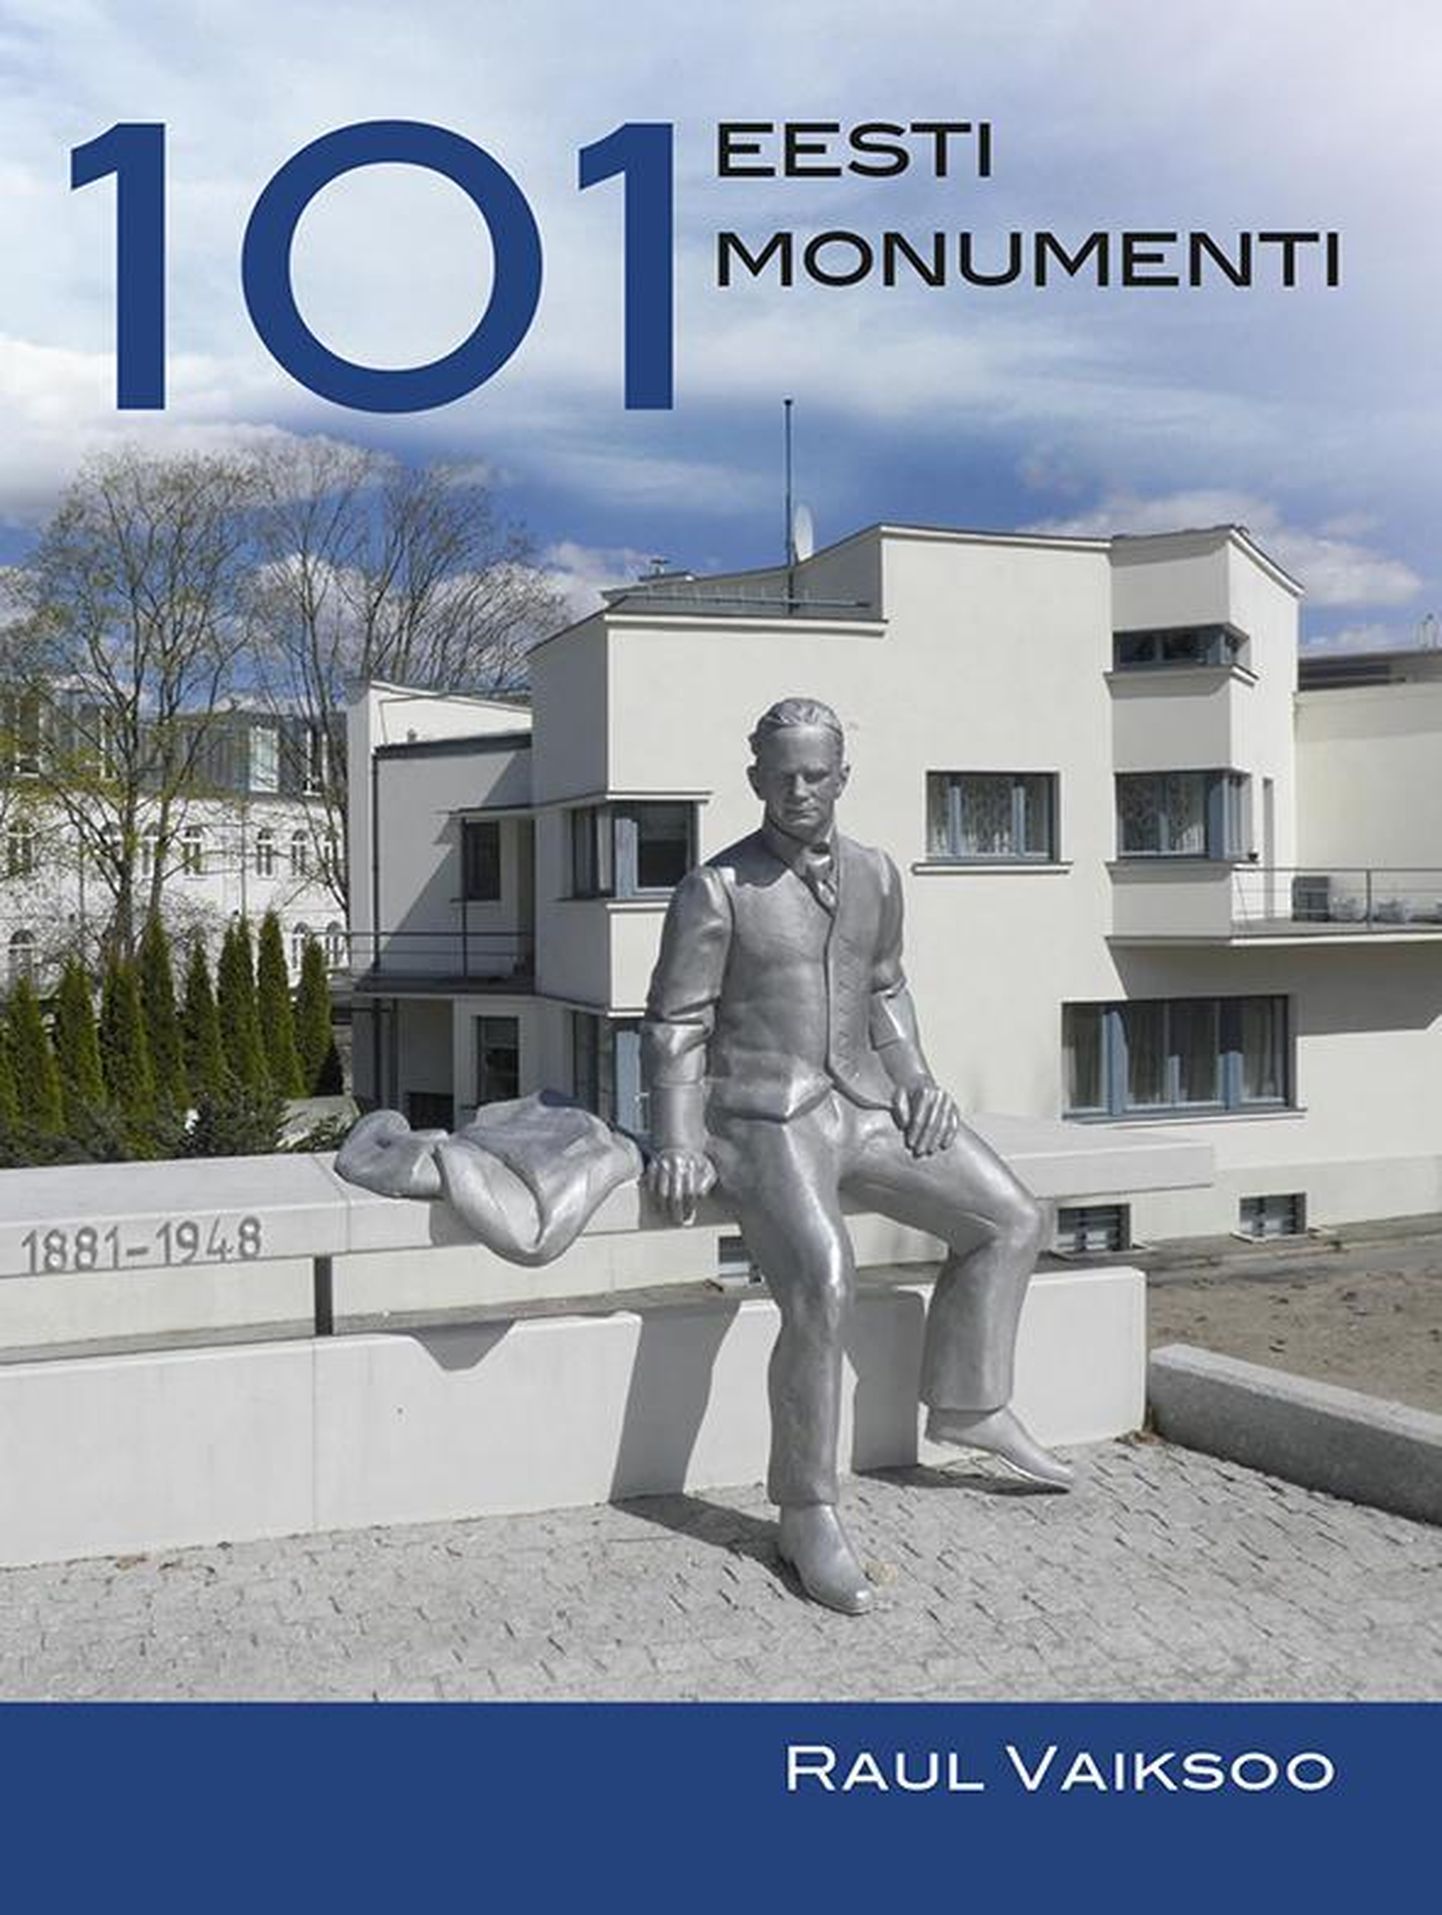 «101 Eesti monumenti».